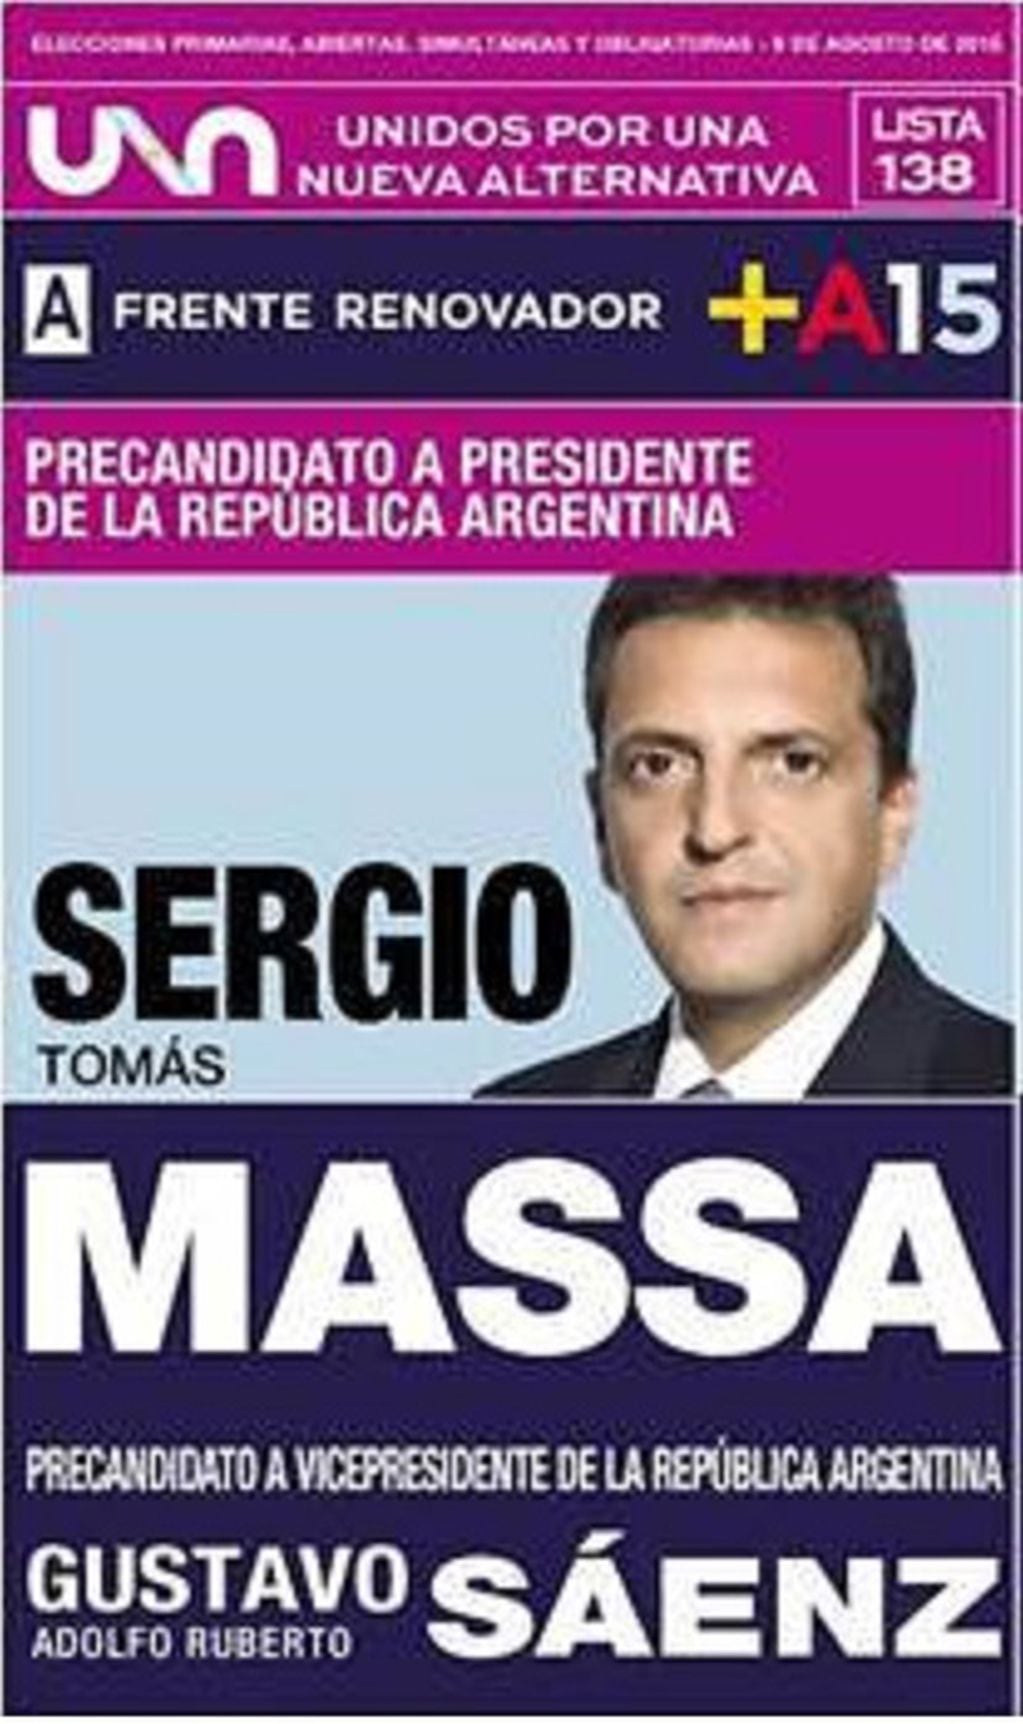 La boleta de Massa y Sáenz en las elecciones presidenciales del 2015.